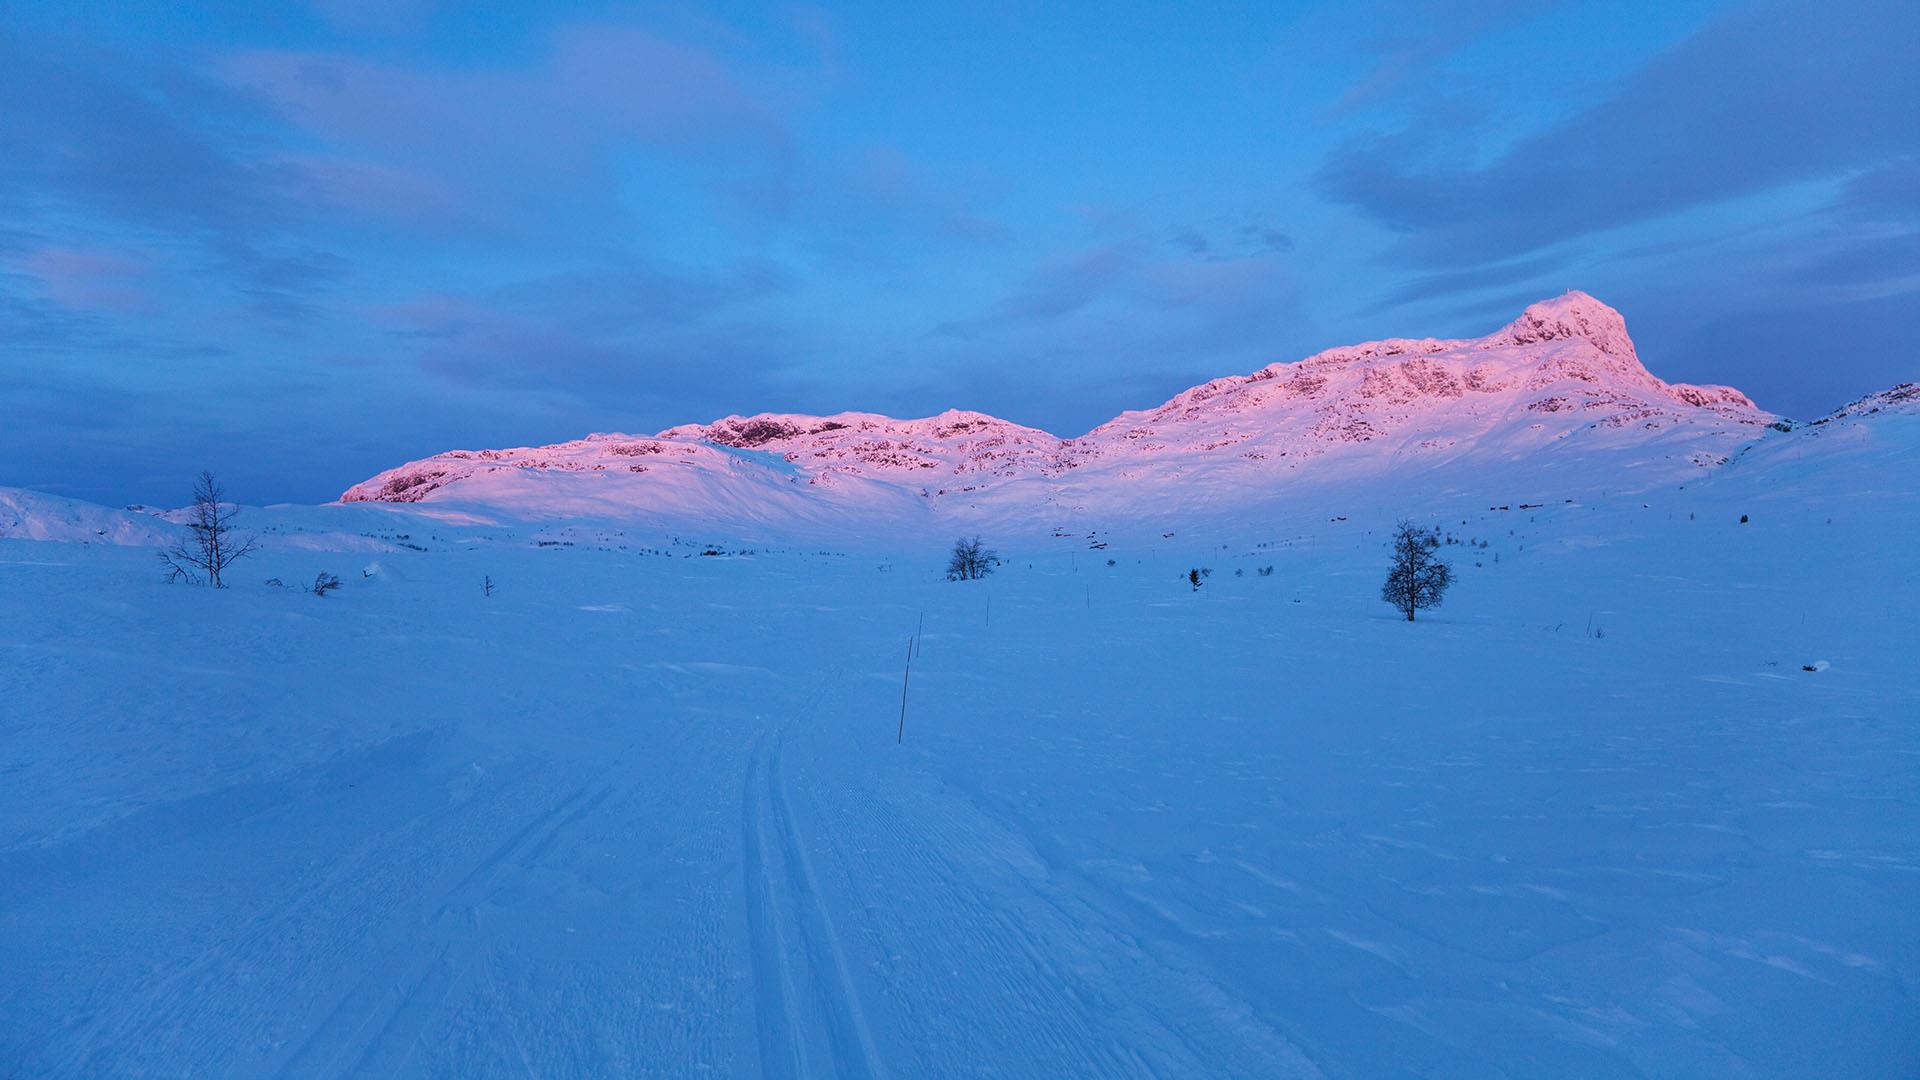 Sonnenaufgang im Winterfjell. Die ersten Sonnenstrahlen färben einen Berg rosa, während die Skiloipe im Vordergrund noch in tiefblauem Schatten liegt.